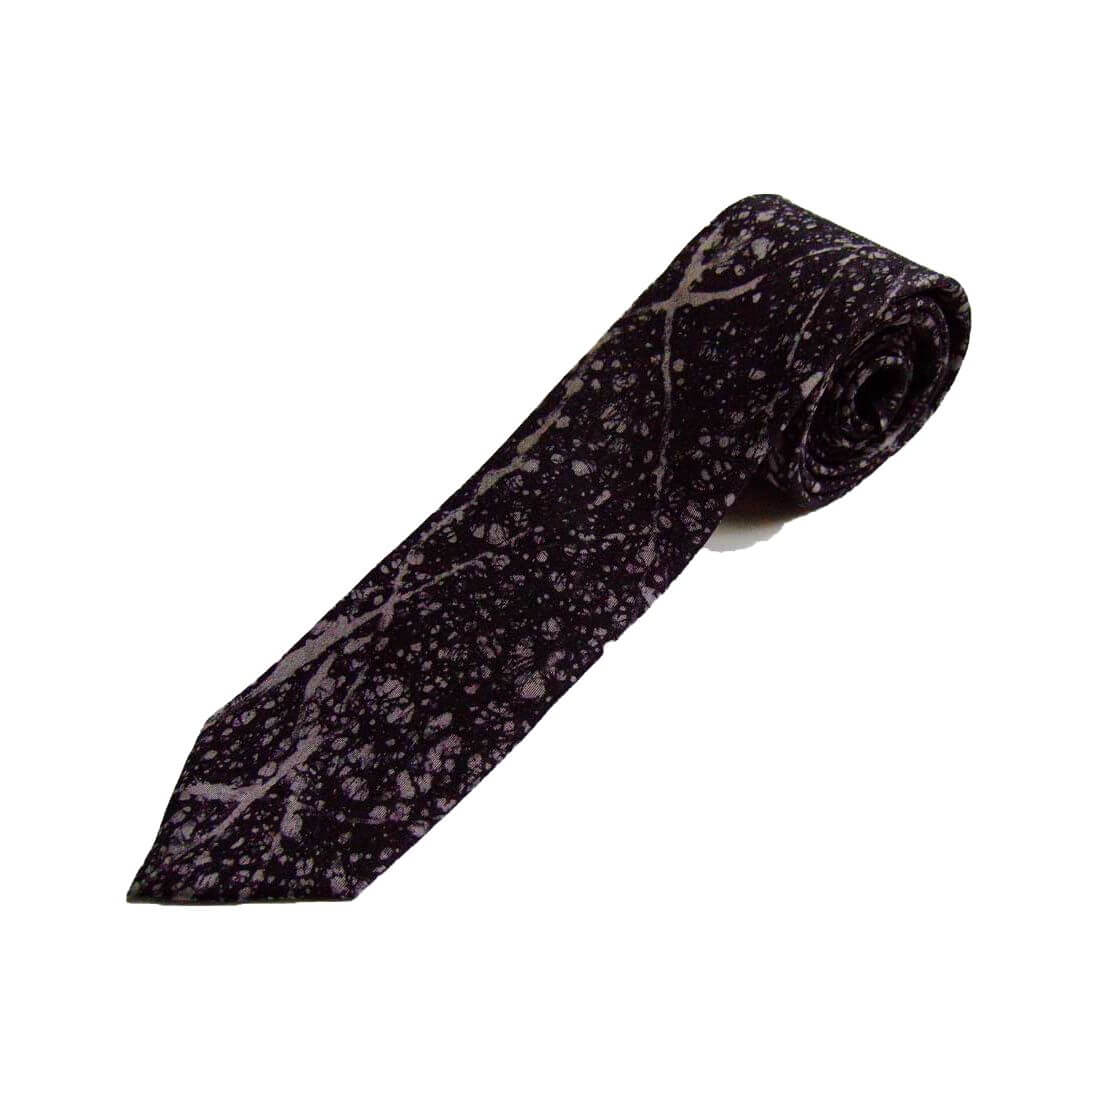 Cravate en soie, Pièce unique peinte à la main. Confectionnée à Paris Soie libre